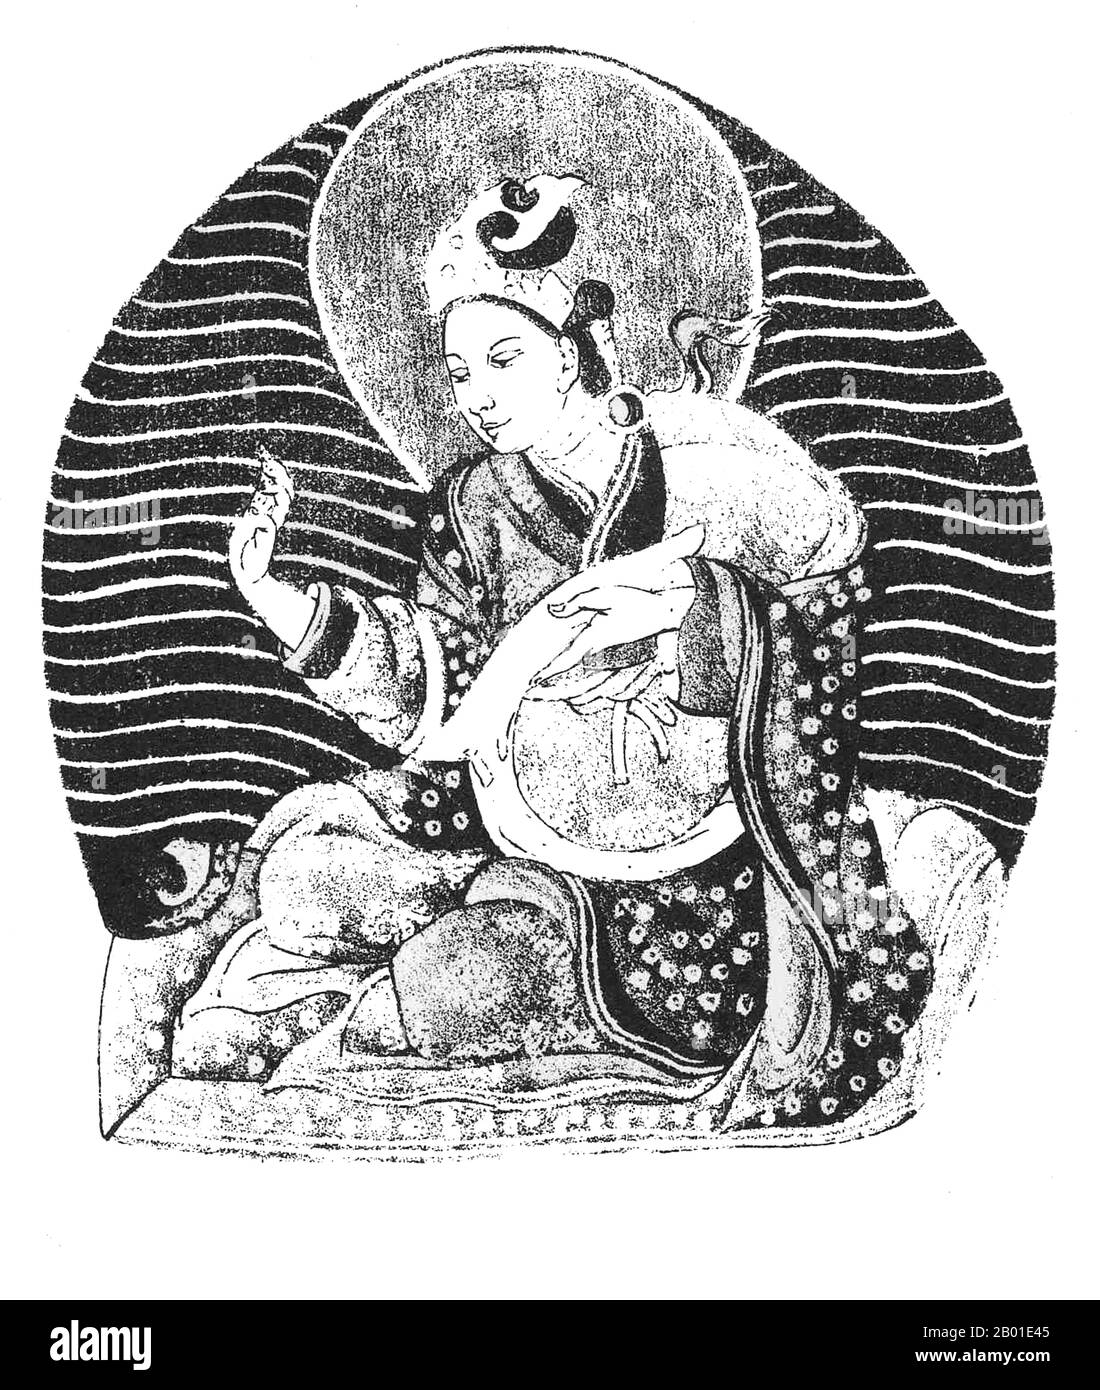 China/Tibet: Manjushri Kirti, der legendäre König von Shambhala. Illustration aus "Beiträgen zu Tibet" von Sarat Chandra das (1849-1917), 1882. Manjushrí Kírti (Tibetisch: Rigdan Tagpa) soll 159 BCE geboren worden sein und über Shambhala herrschten, in der 300.510 Anhänger der Mlechha-Religion (Yavana oder "westliche" Religion) lebten, von denen einige die Sonne anbeteten. Man sagt, er hätte alle Ketzer aus seinen Herrschaften vertrieben, aber später, nachdem er ihre Petitionen gehört hatte, erlaubte er ihnen, zurückzukehren. Zu ihrem Nutzen und zum Nutzen aller Lebewesen erklärte er die Kalachakra-Lehren. Stockfoto